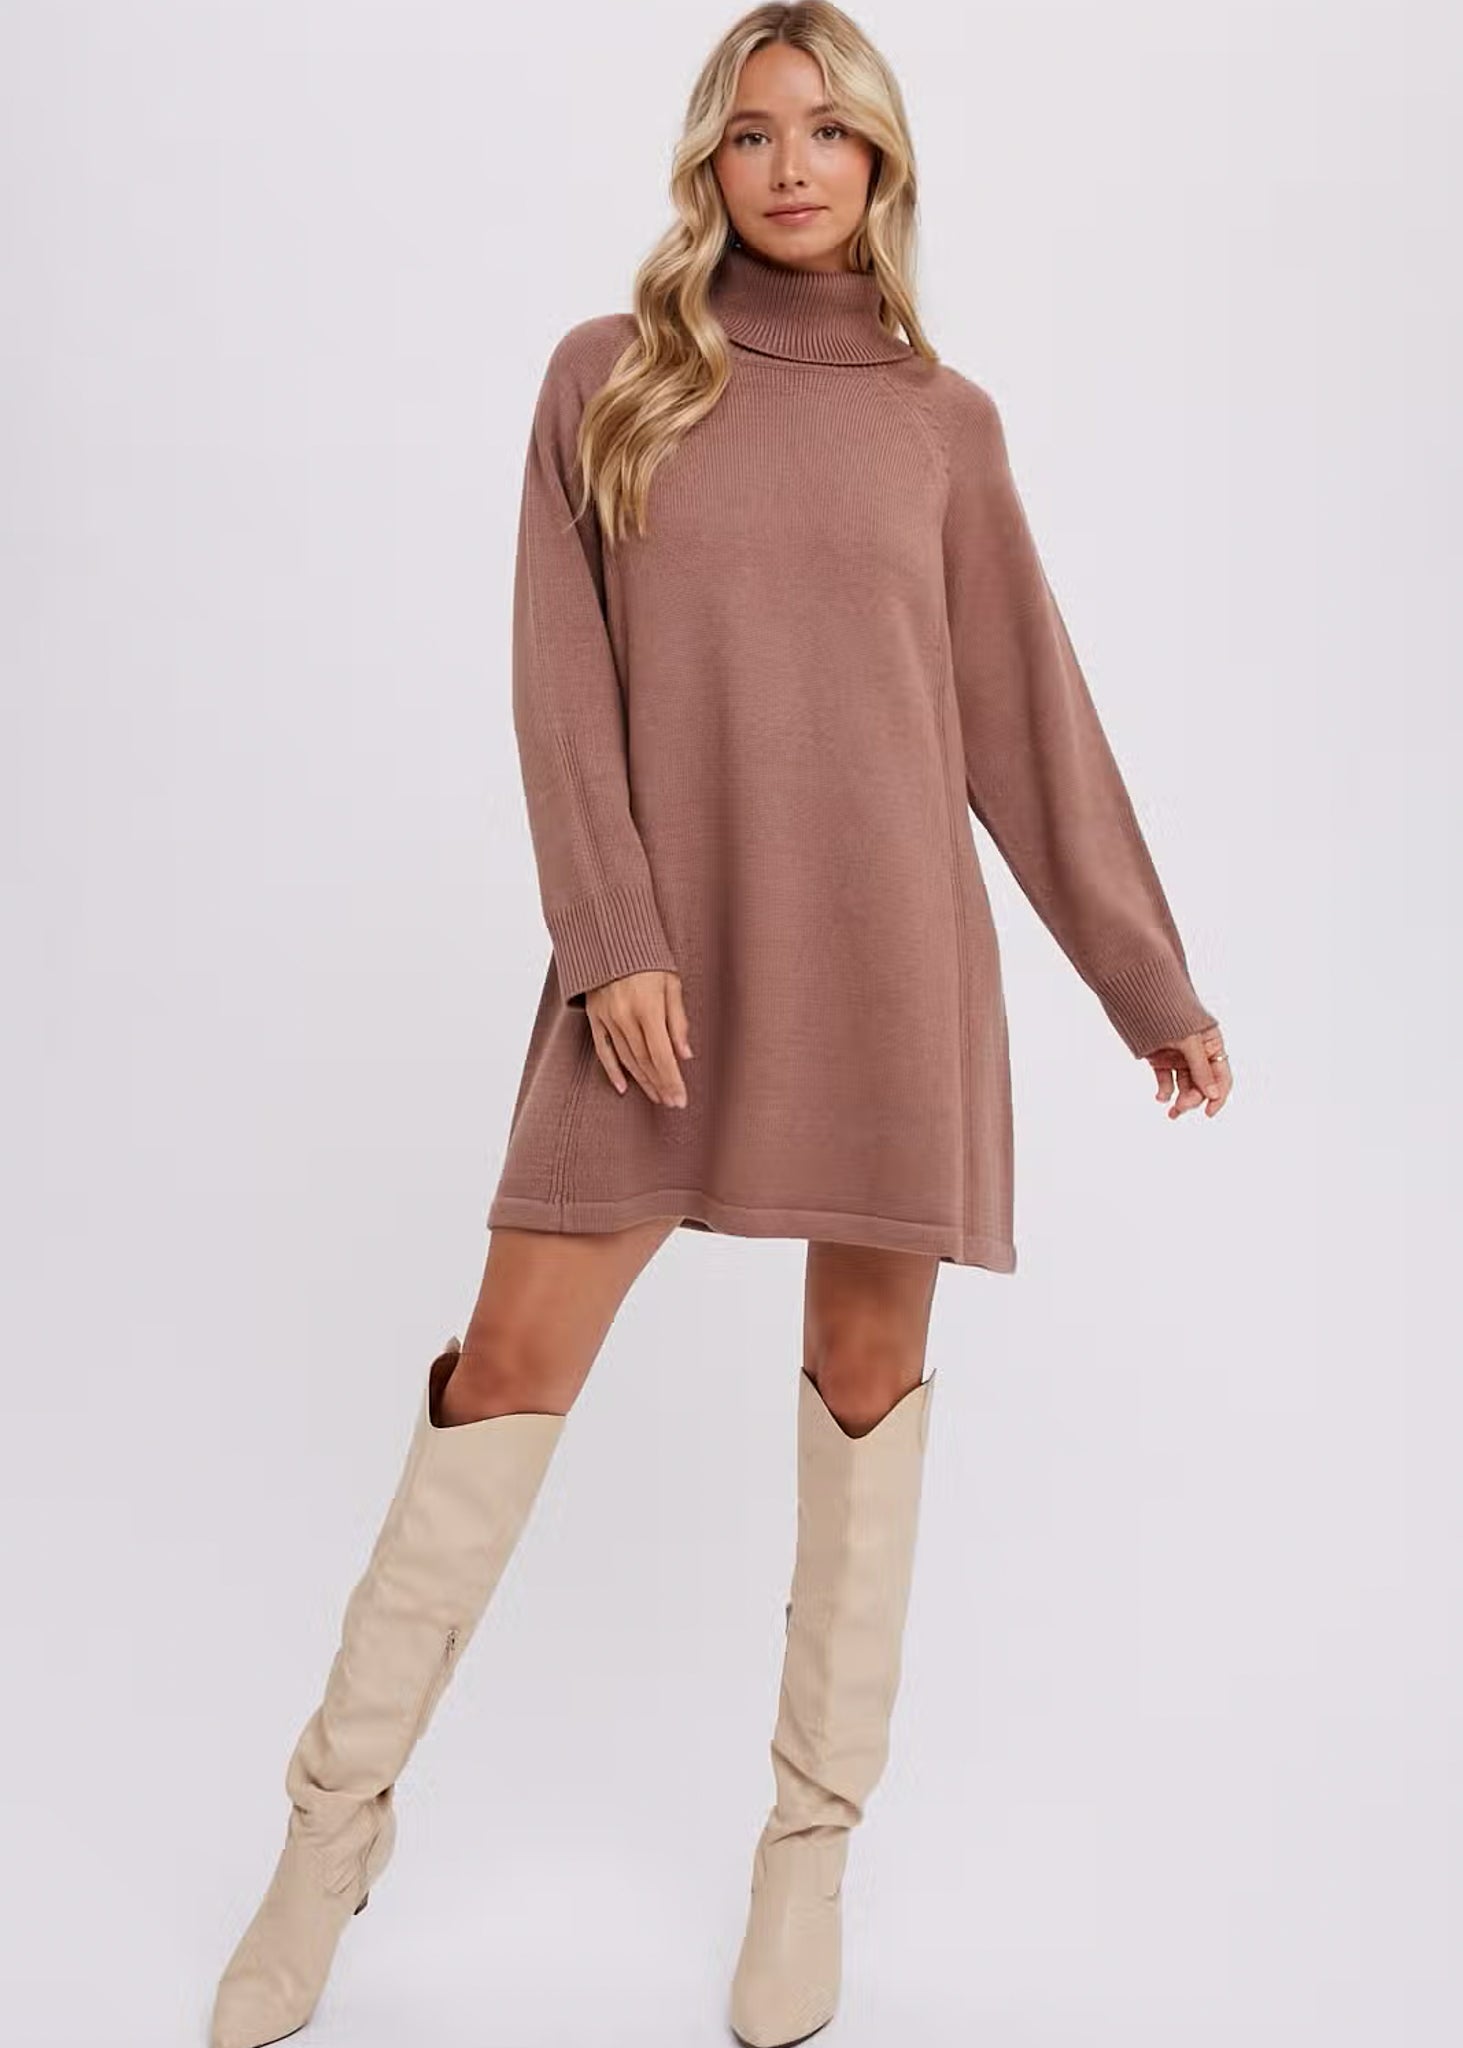 Arrianne Turtleneck Sweater Dress - Latte